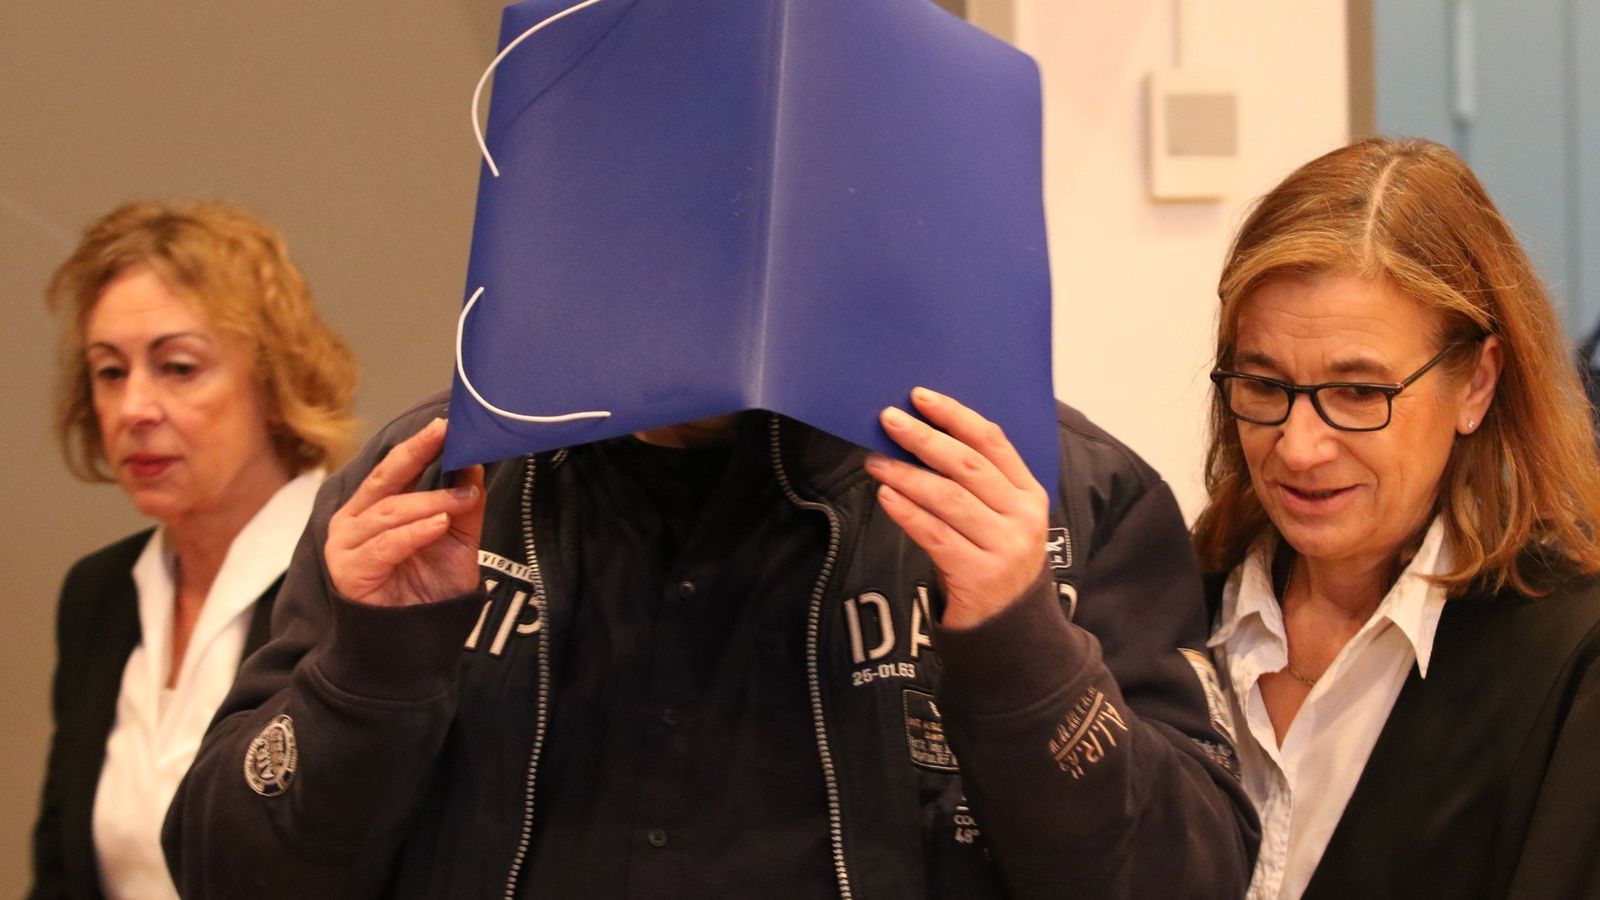 Foto: El enfermero Niels Högel se cubre el rostro al entrar en la sala de los juzgados de Oldemburgo en Alemania. (EFE)